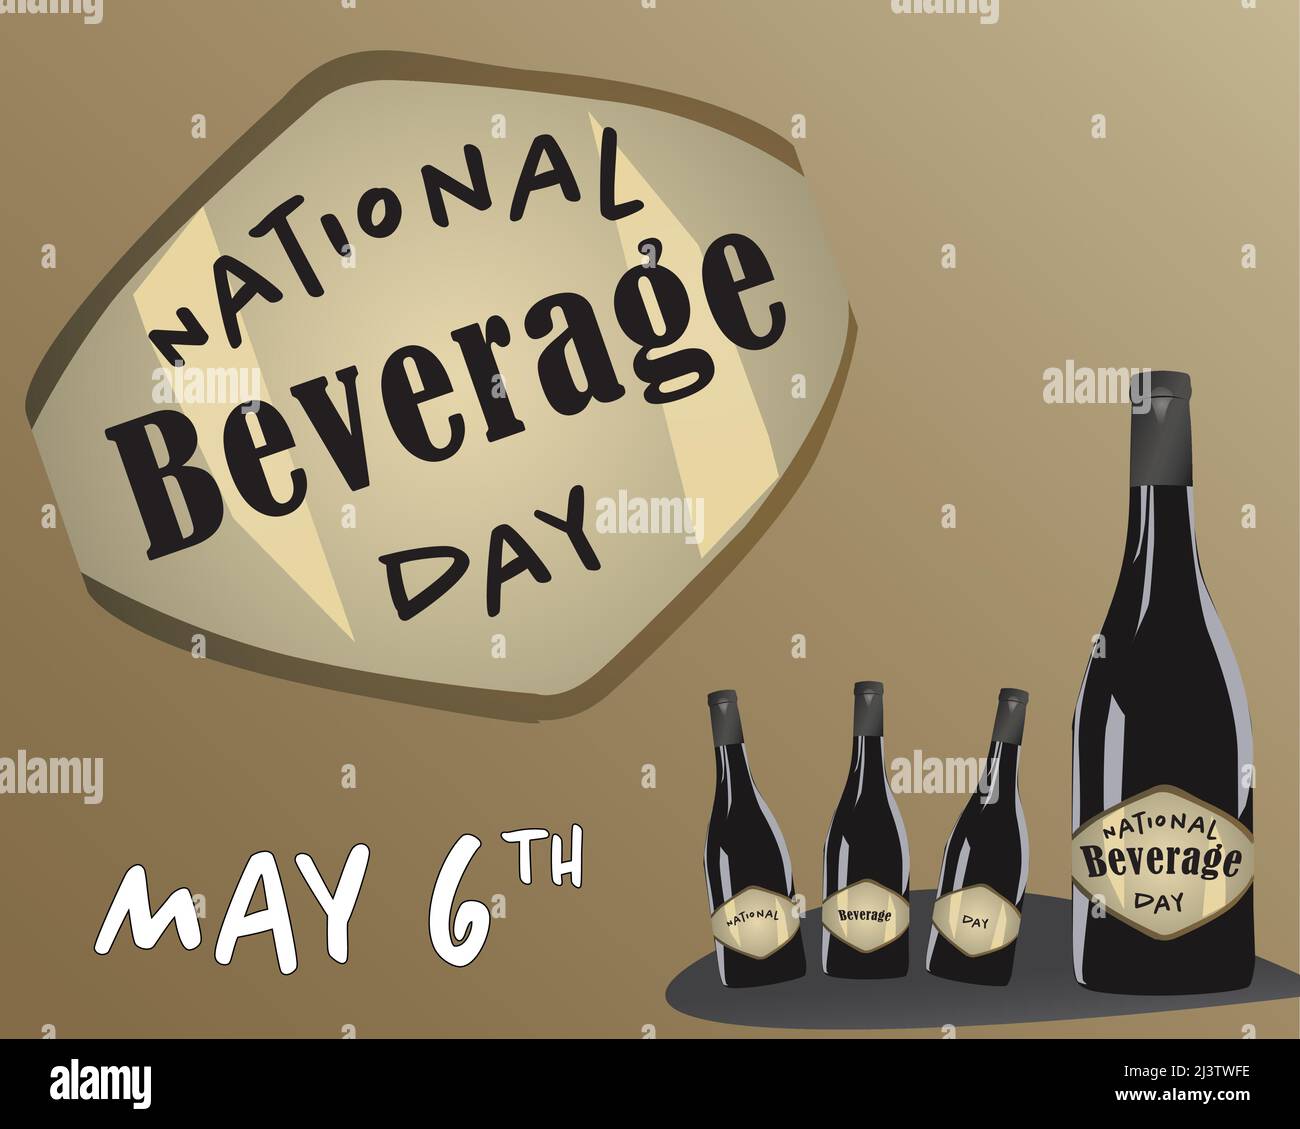 Banner o Poster Vector Illustration Design for National Beverage Day 6th maggio Illustrazione Vettoriale